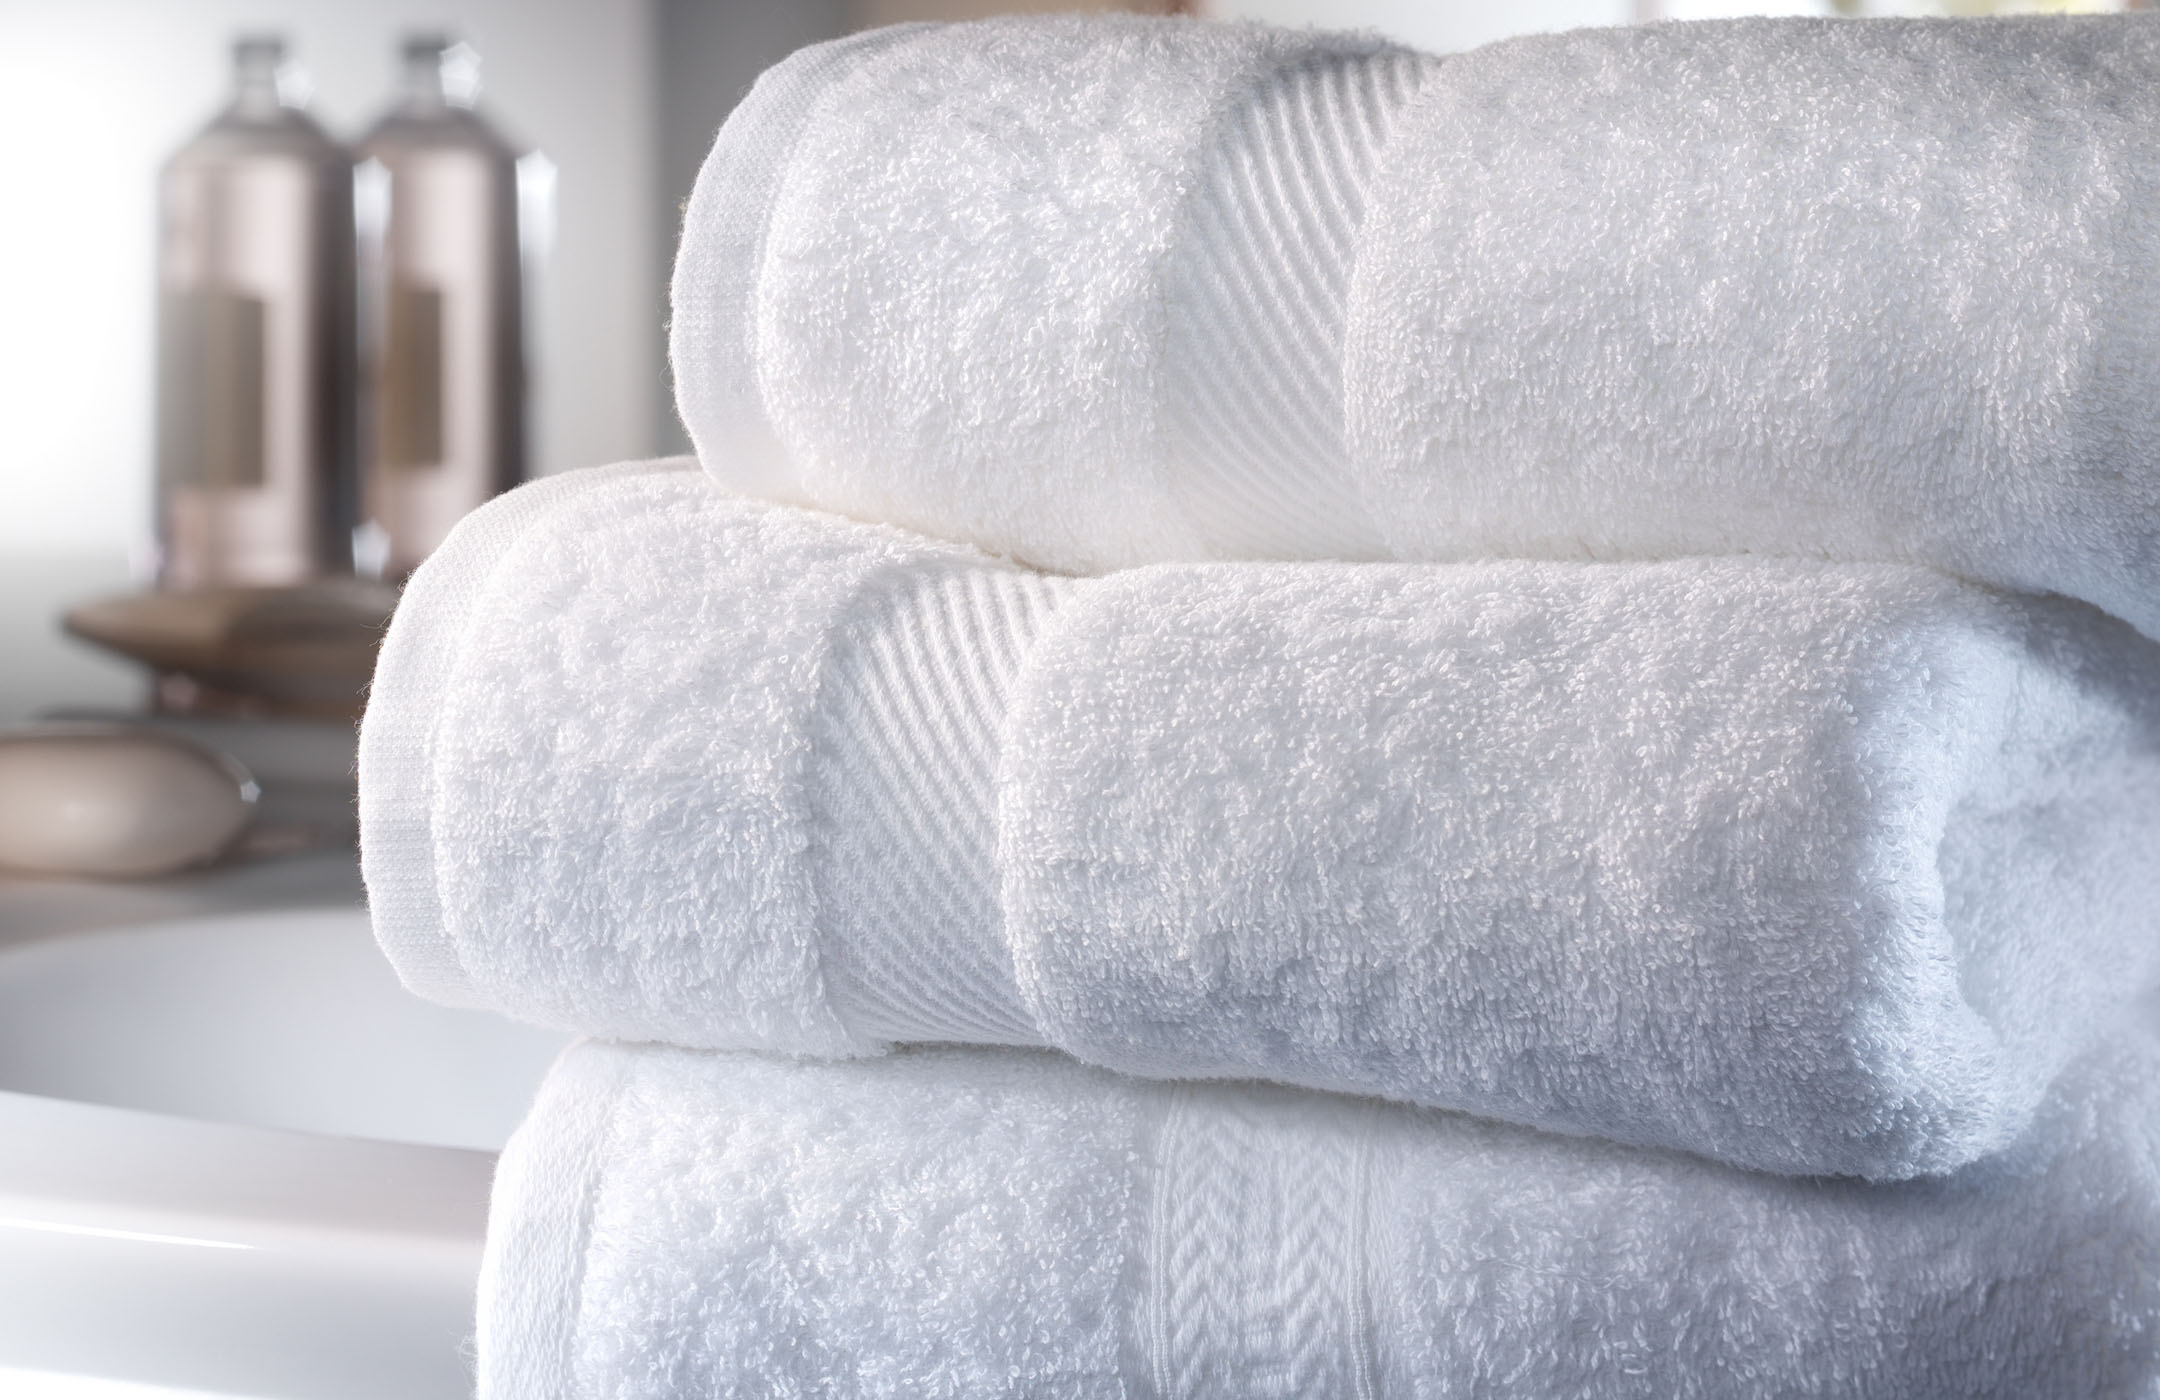 Come eliminare l’odore di muffa dagli asciugamani